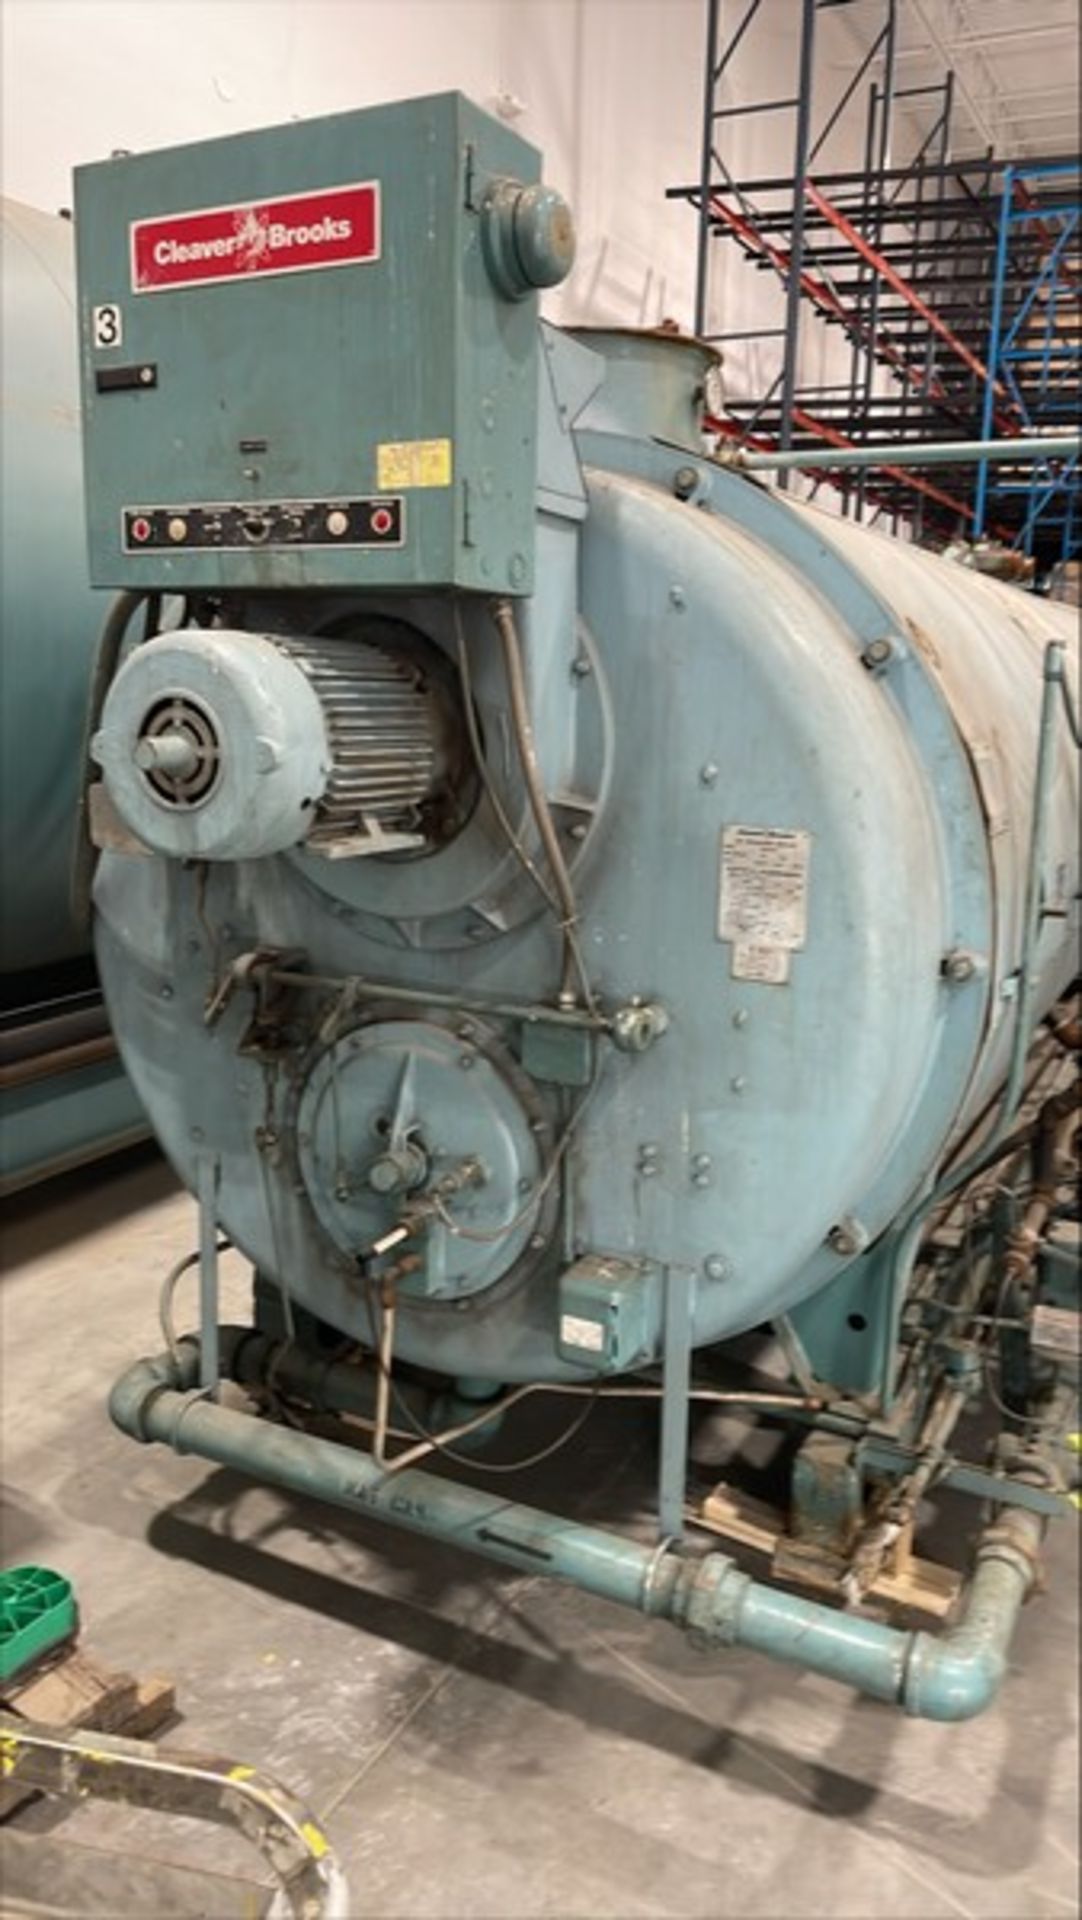 Cleaver Brooks Natural Gas Boiler, Model CB-700-200 S/N L-958854, Volt 460, Phase 3, Hz. 60, Amp 15, - Image 3 of 10